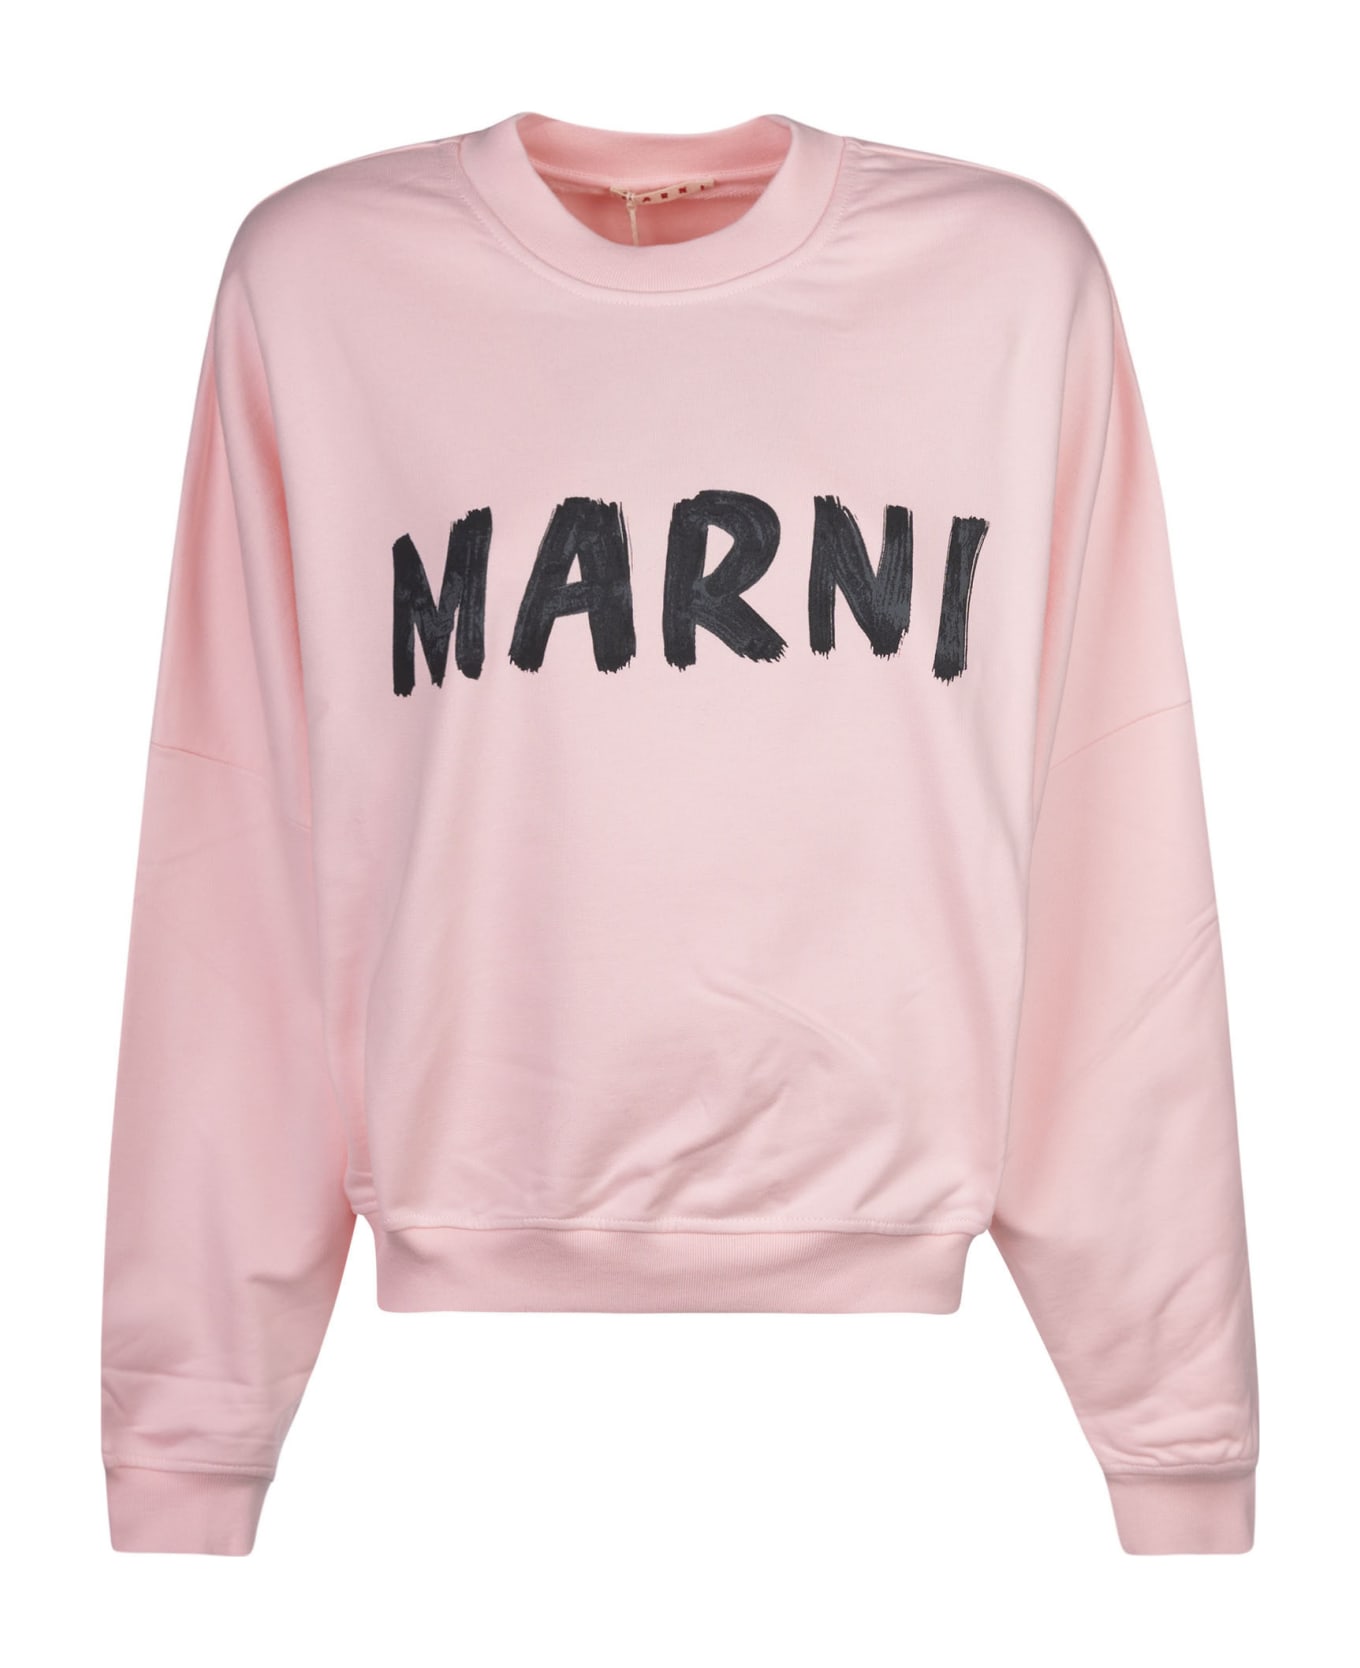 Marni Oversized Logo Sweatshirt - Pink Gummy